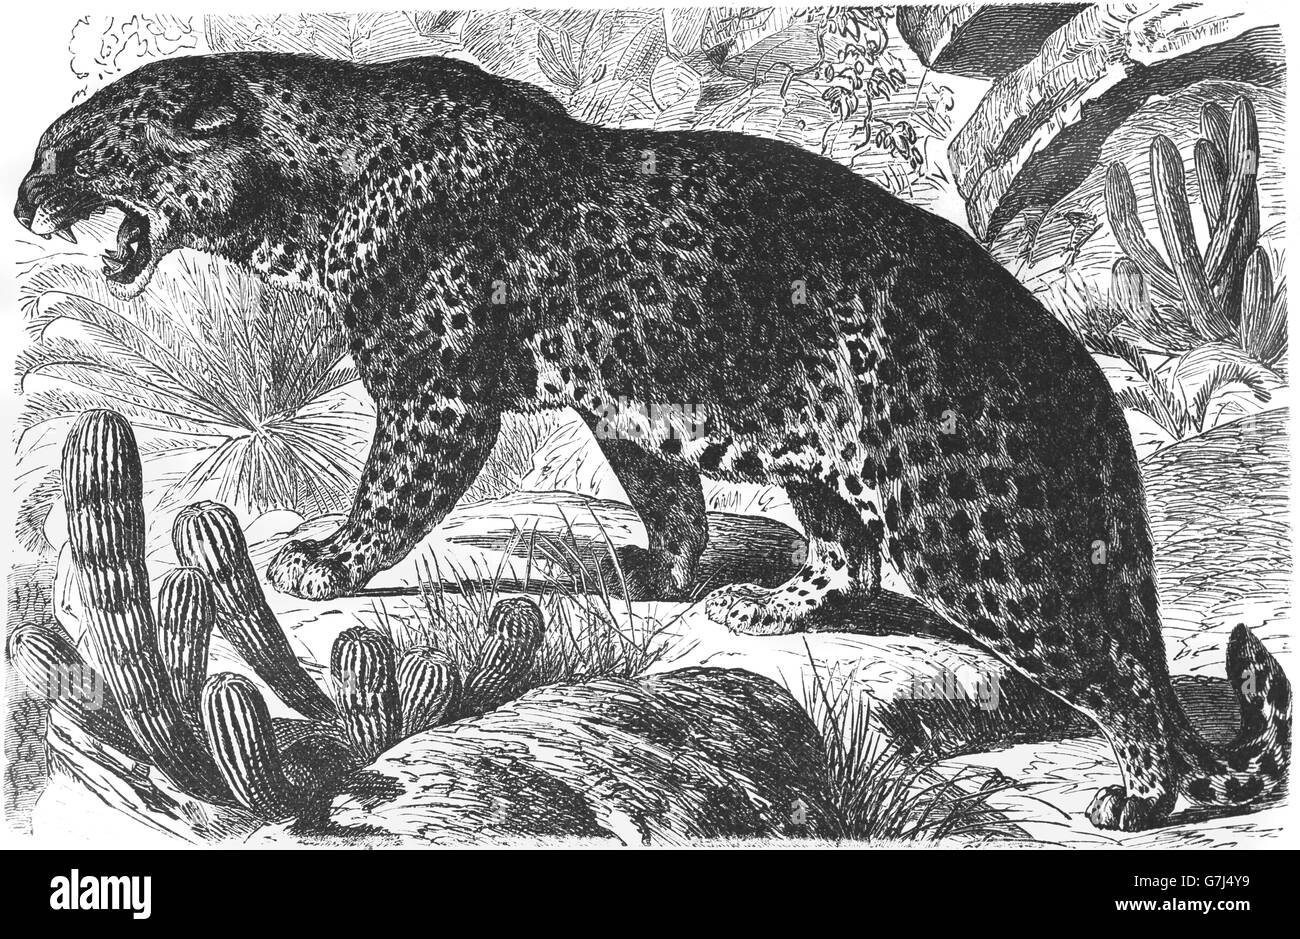 Léopard, Panthera pardus, Wildcat, Feliformia, félidés, illustration de livre daté 1904 Banque D'Images